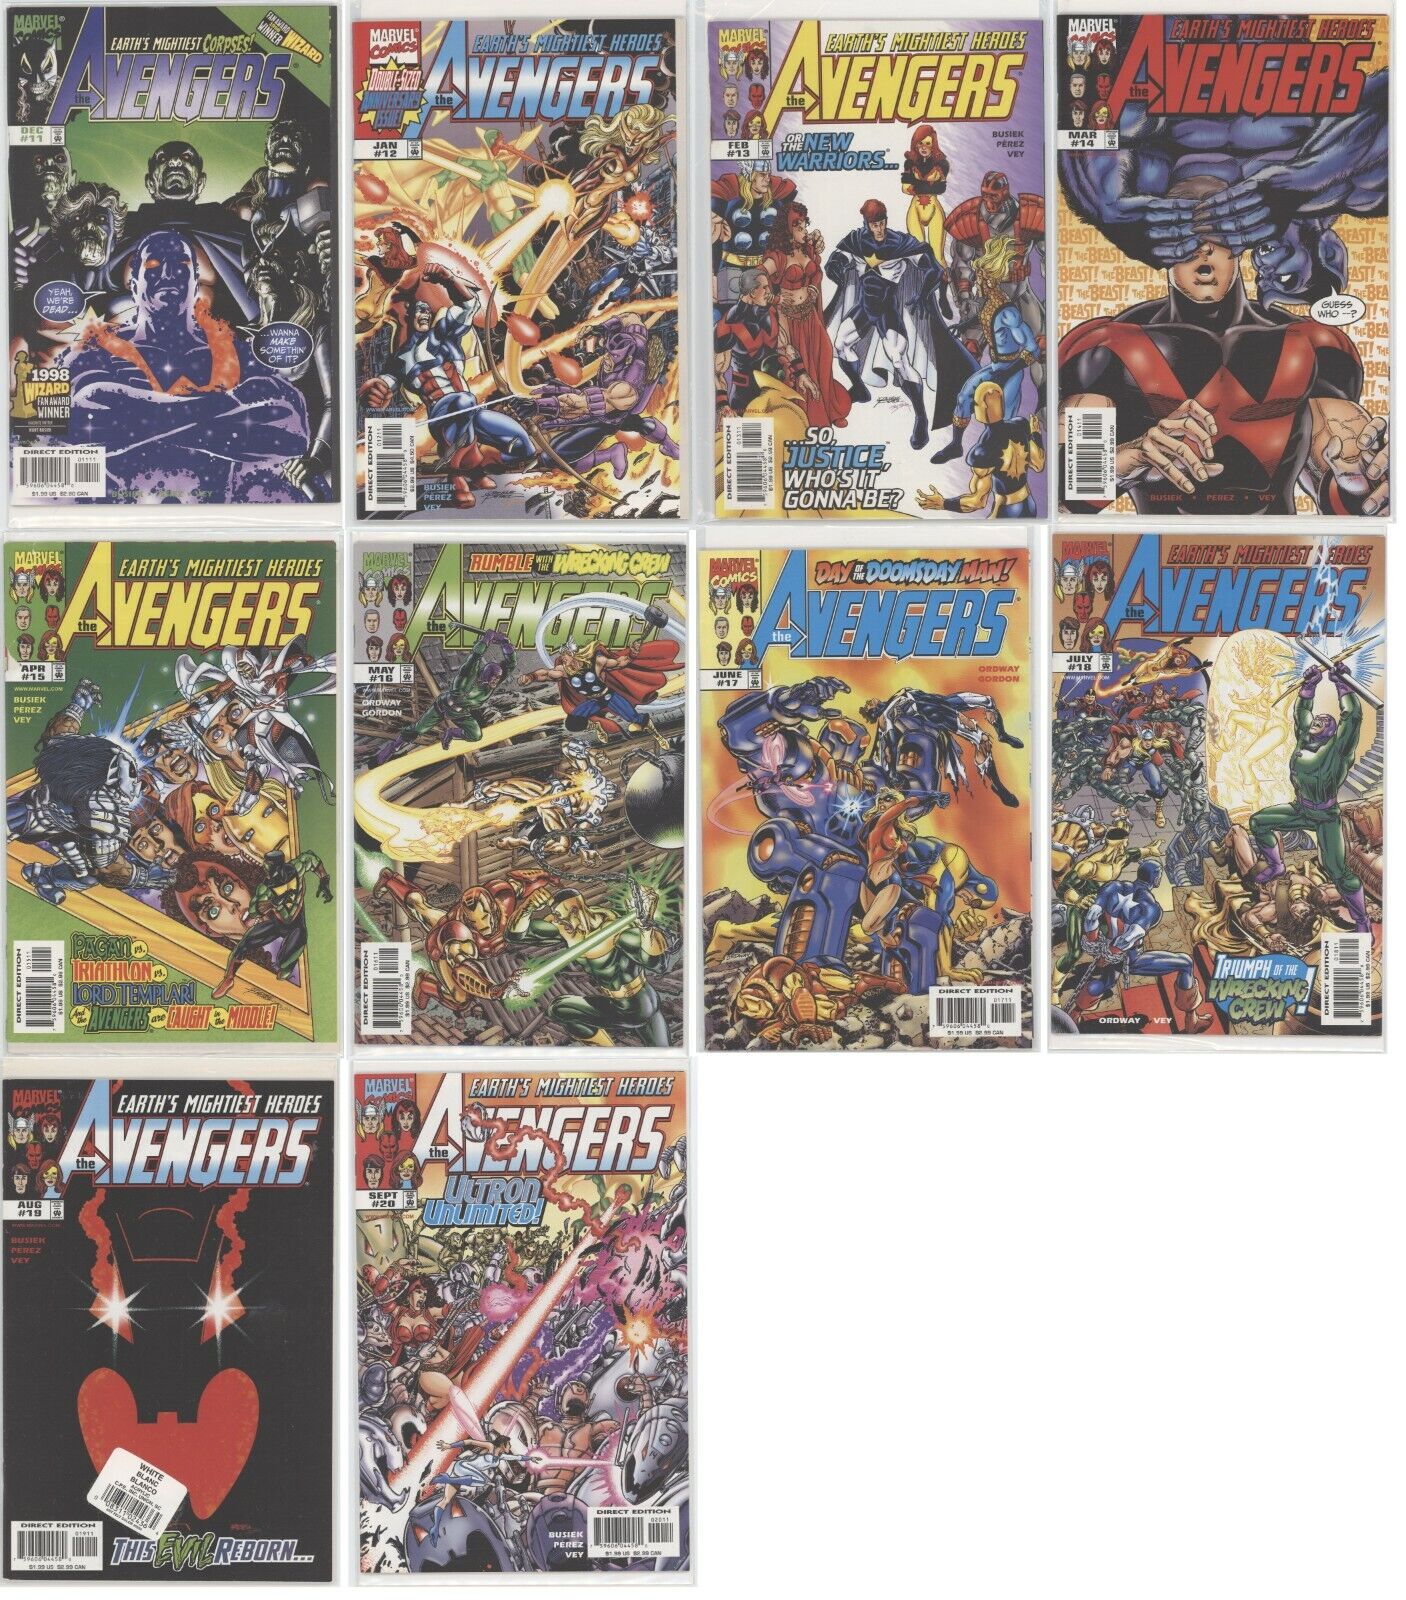 Avengers Vol 3 Issues 11-20 - Dec 98-Sept 99 (10-Comic Books) Marvel